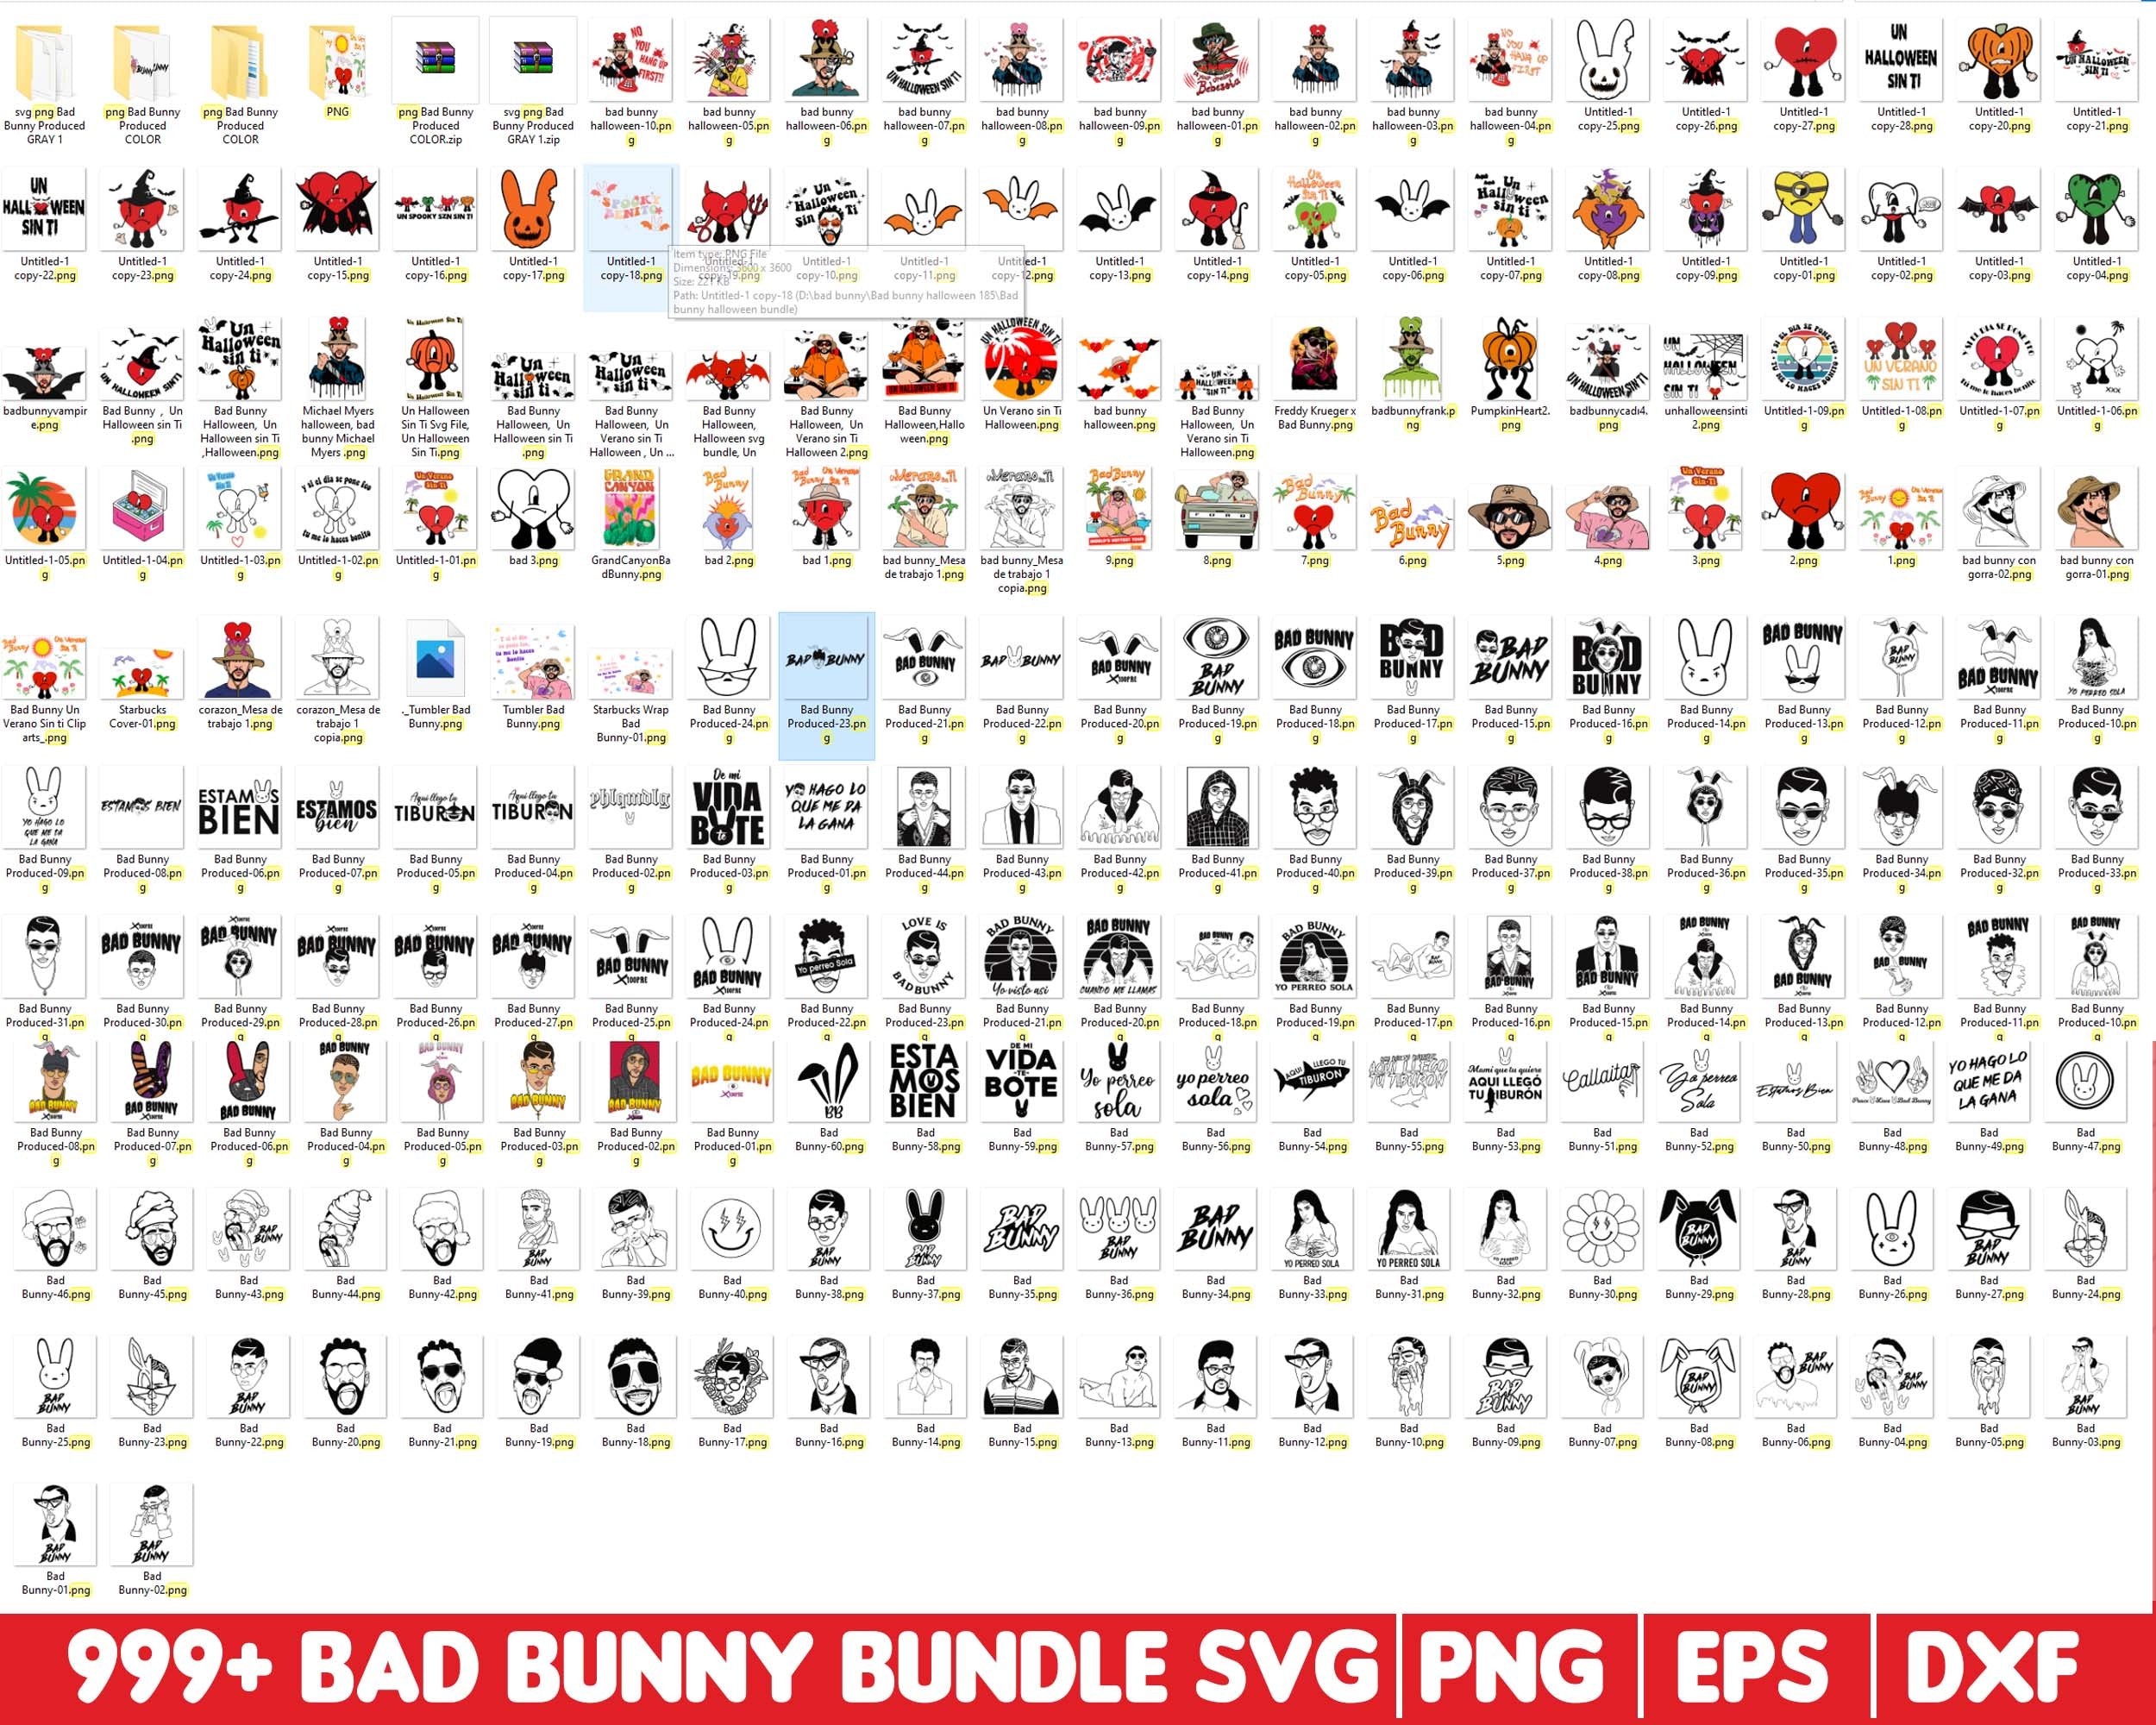 Bad Bunny Dodgers SVG, Bad Bunny SVG DXF EPS PNG